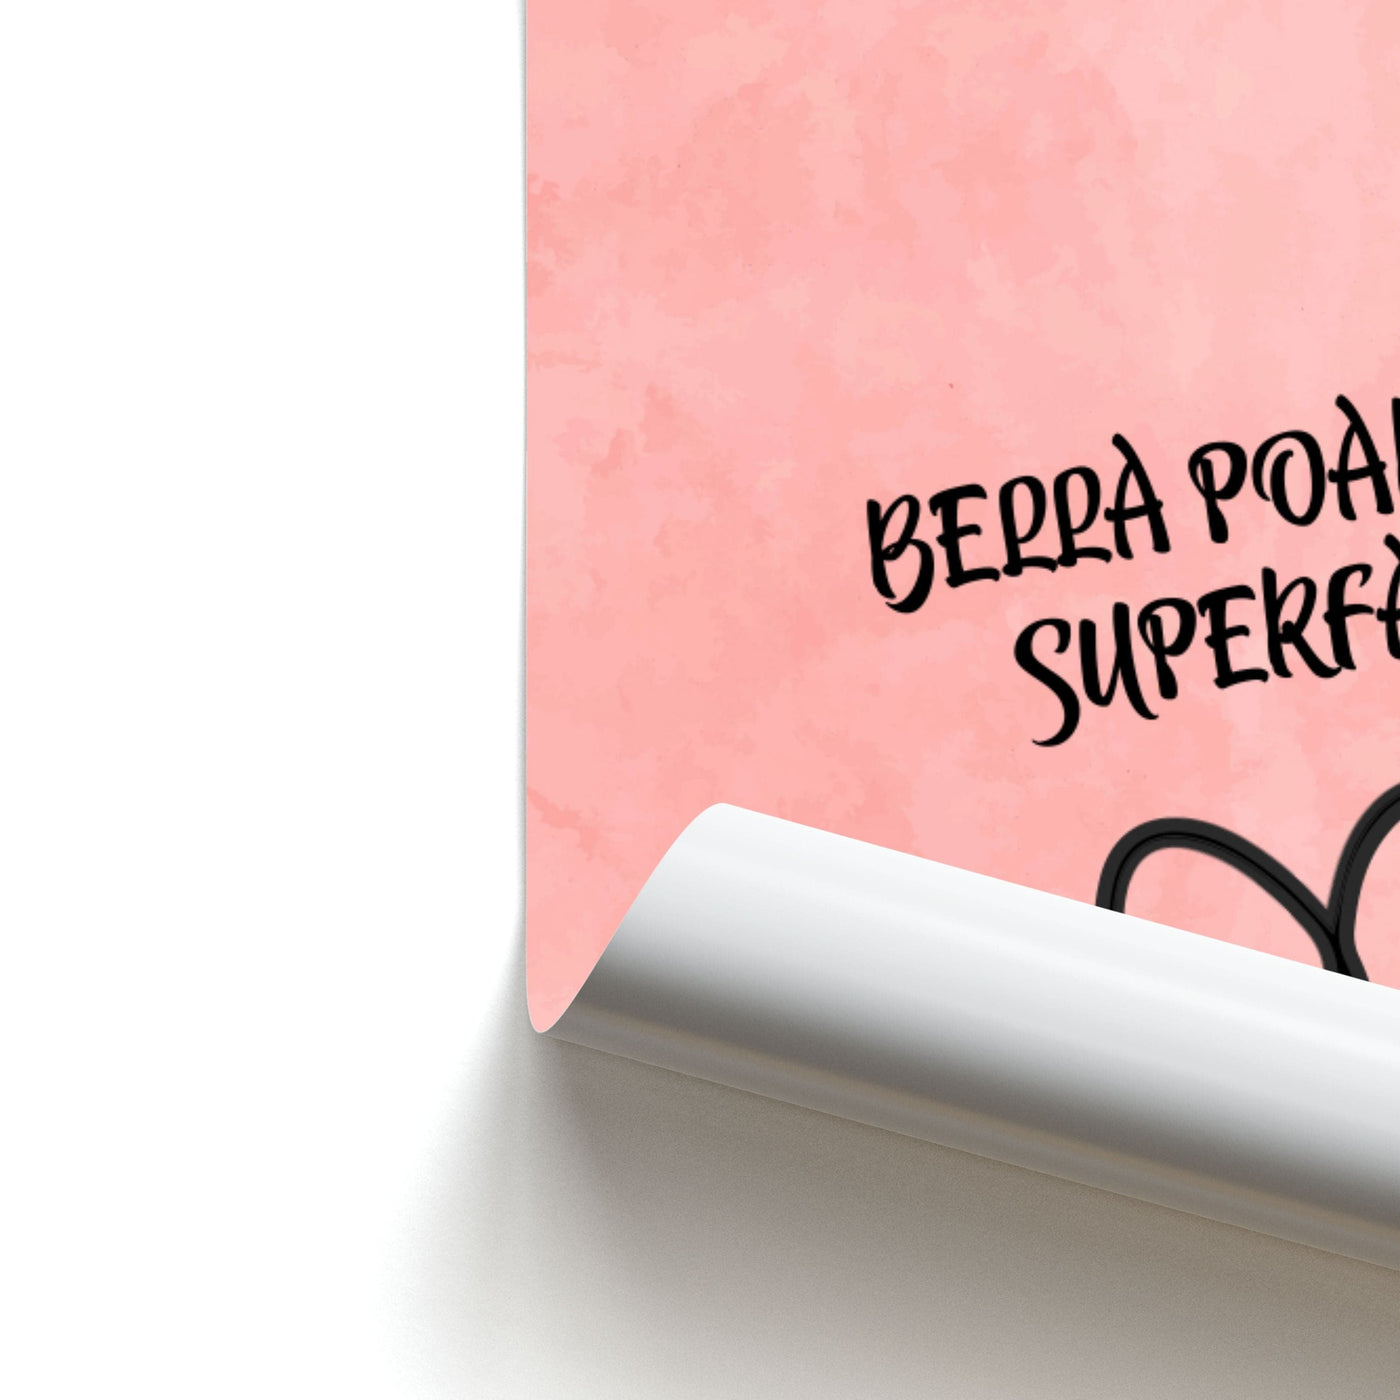 Bella Poarch Superfan Poster